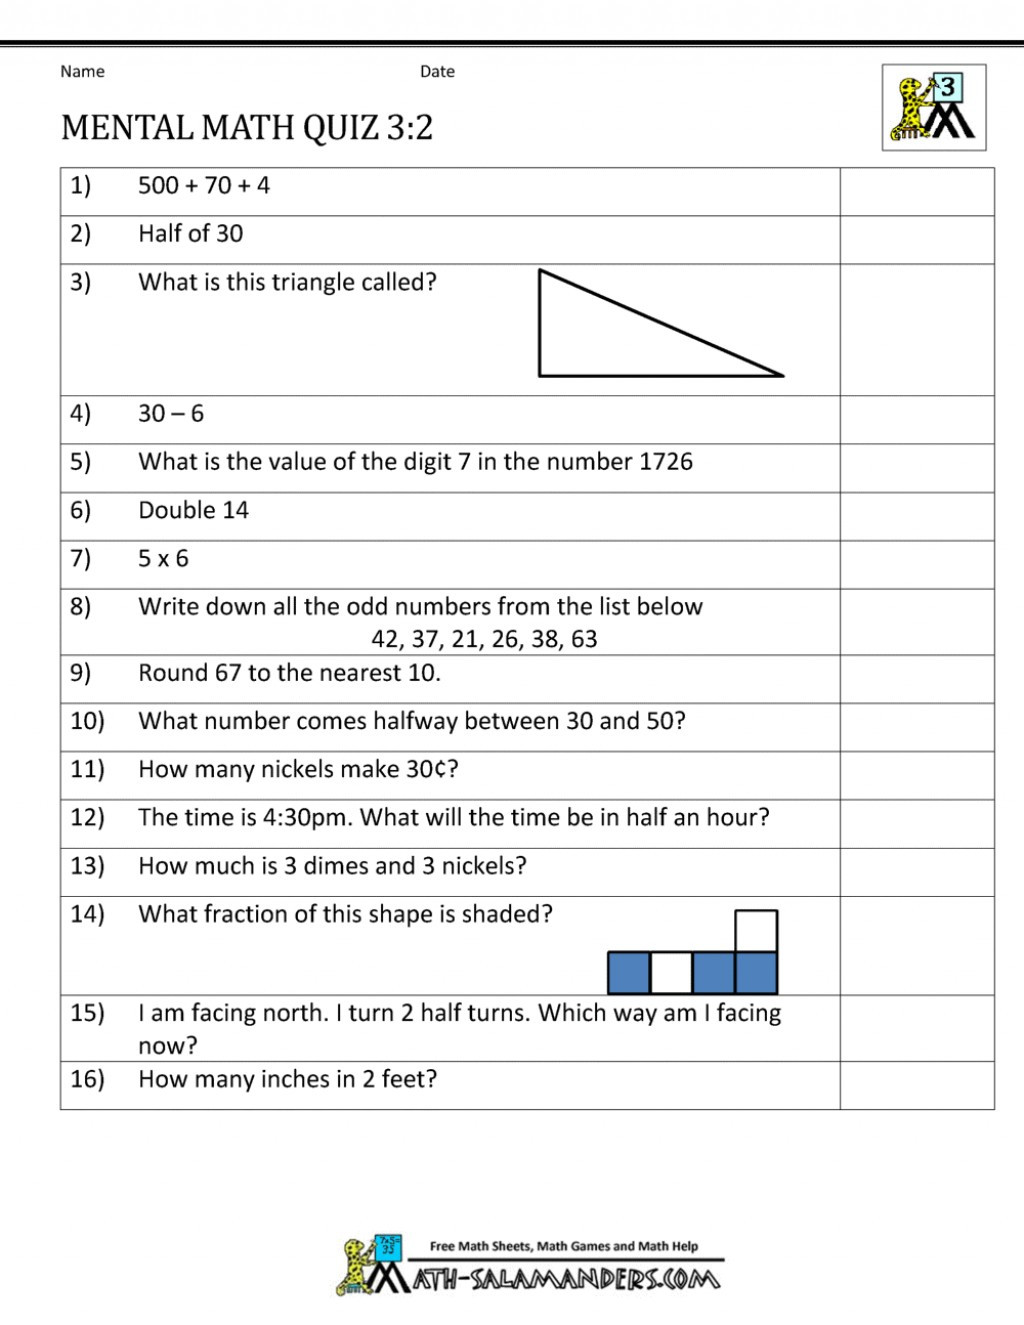 Mental Math Worksheets Grade 3 Mental Math Worksheets for 3rd Grade